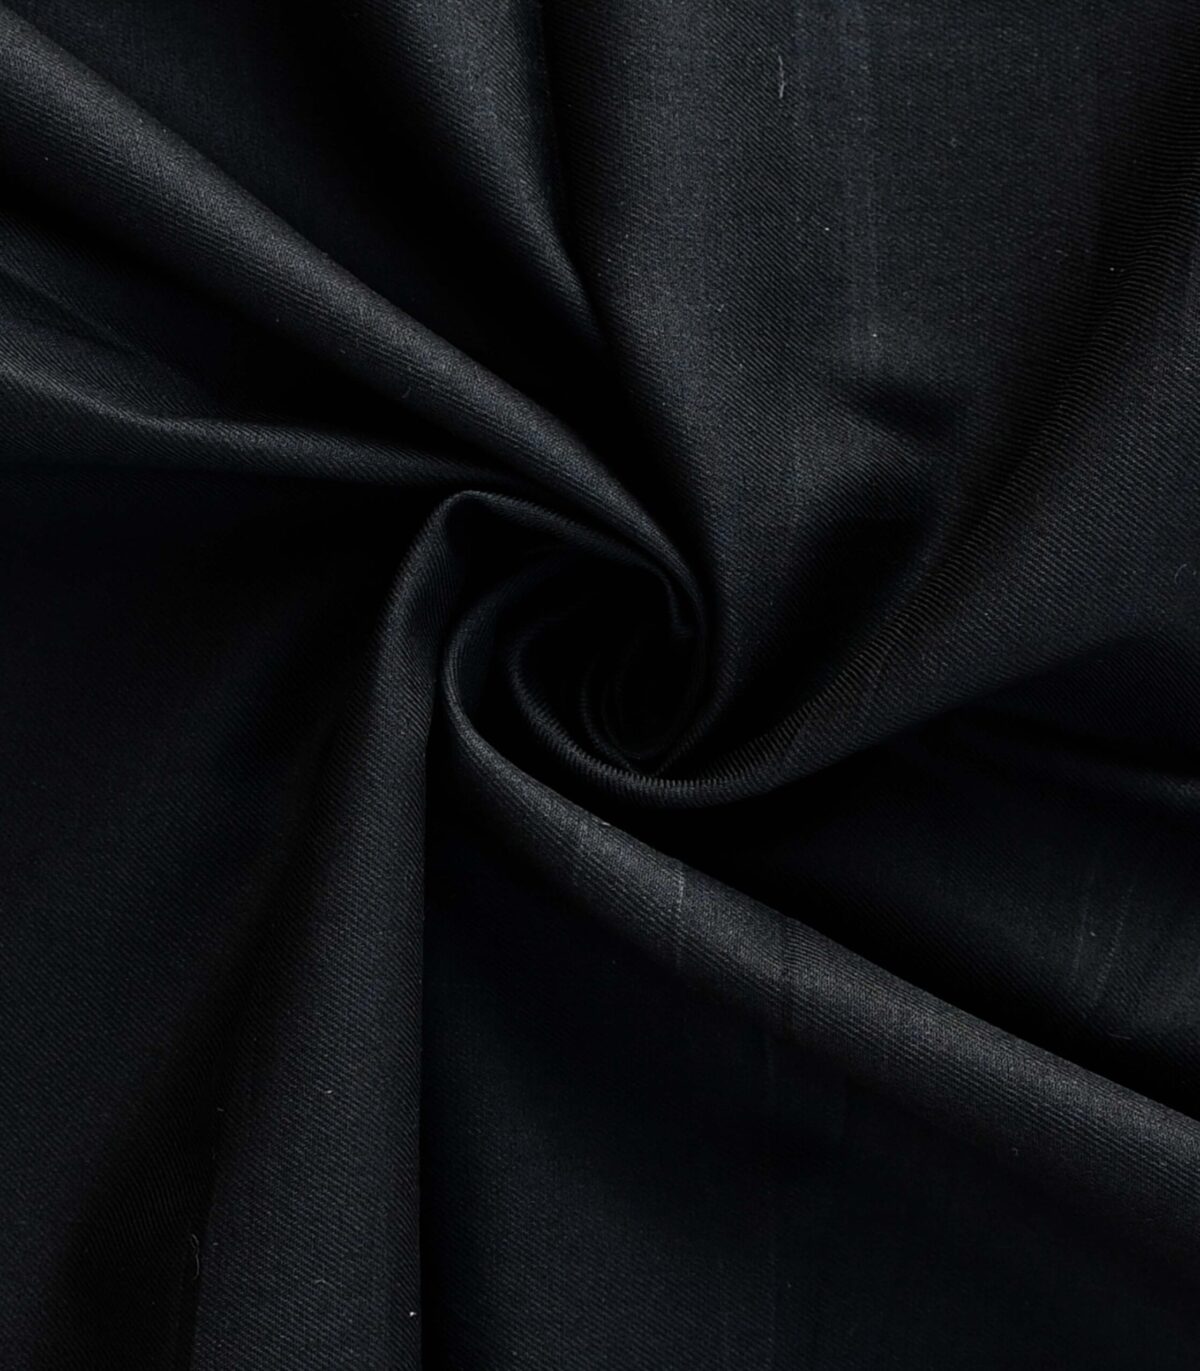 Cotton Black Color Drill Fabric